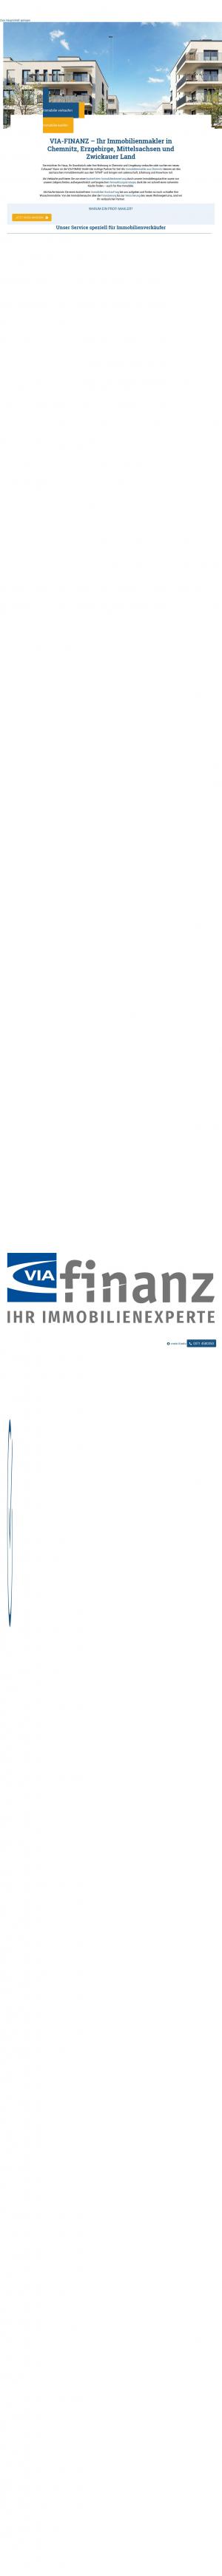 www.viafinanz.de